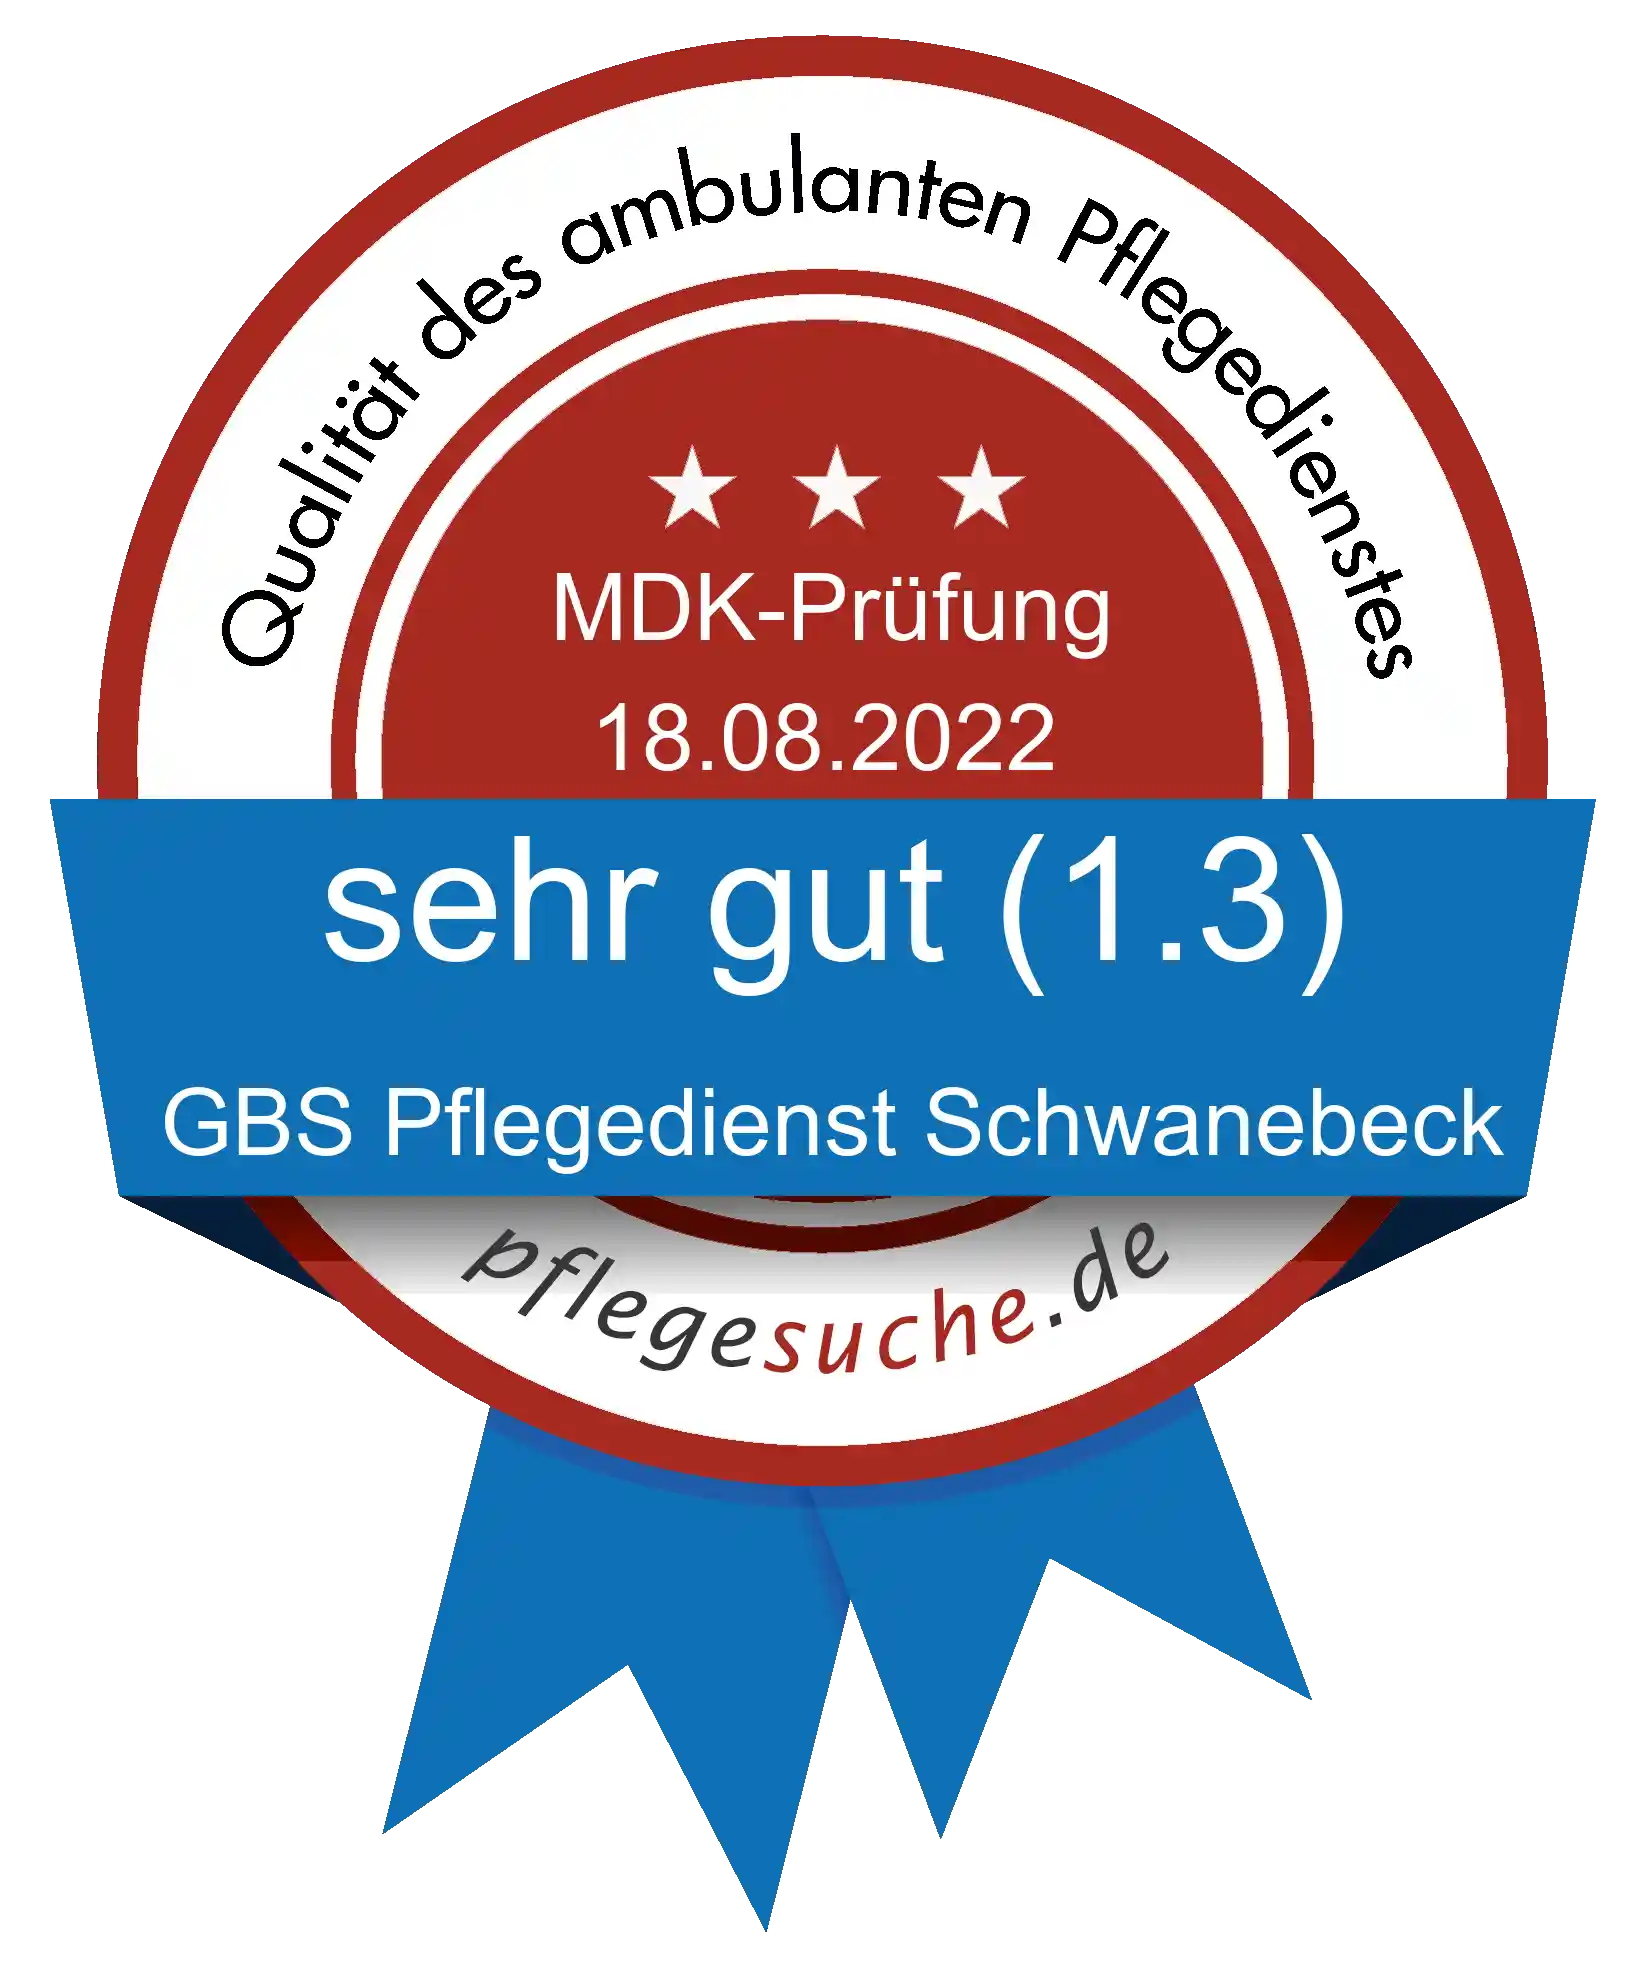 Siegel Benotung: GBS Pflegedienst Schwanebeck